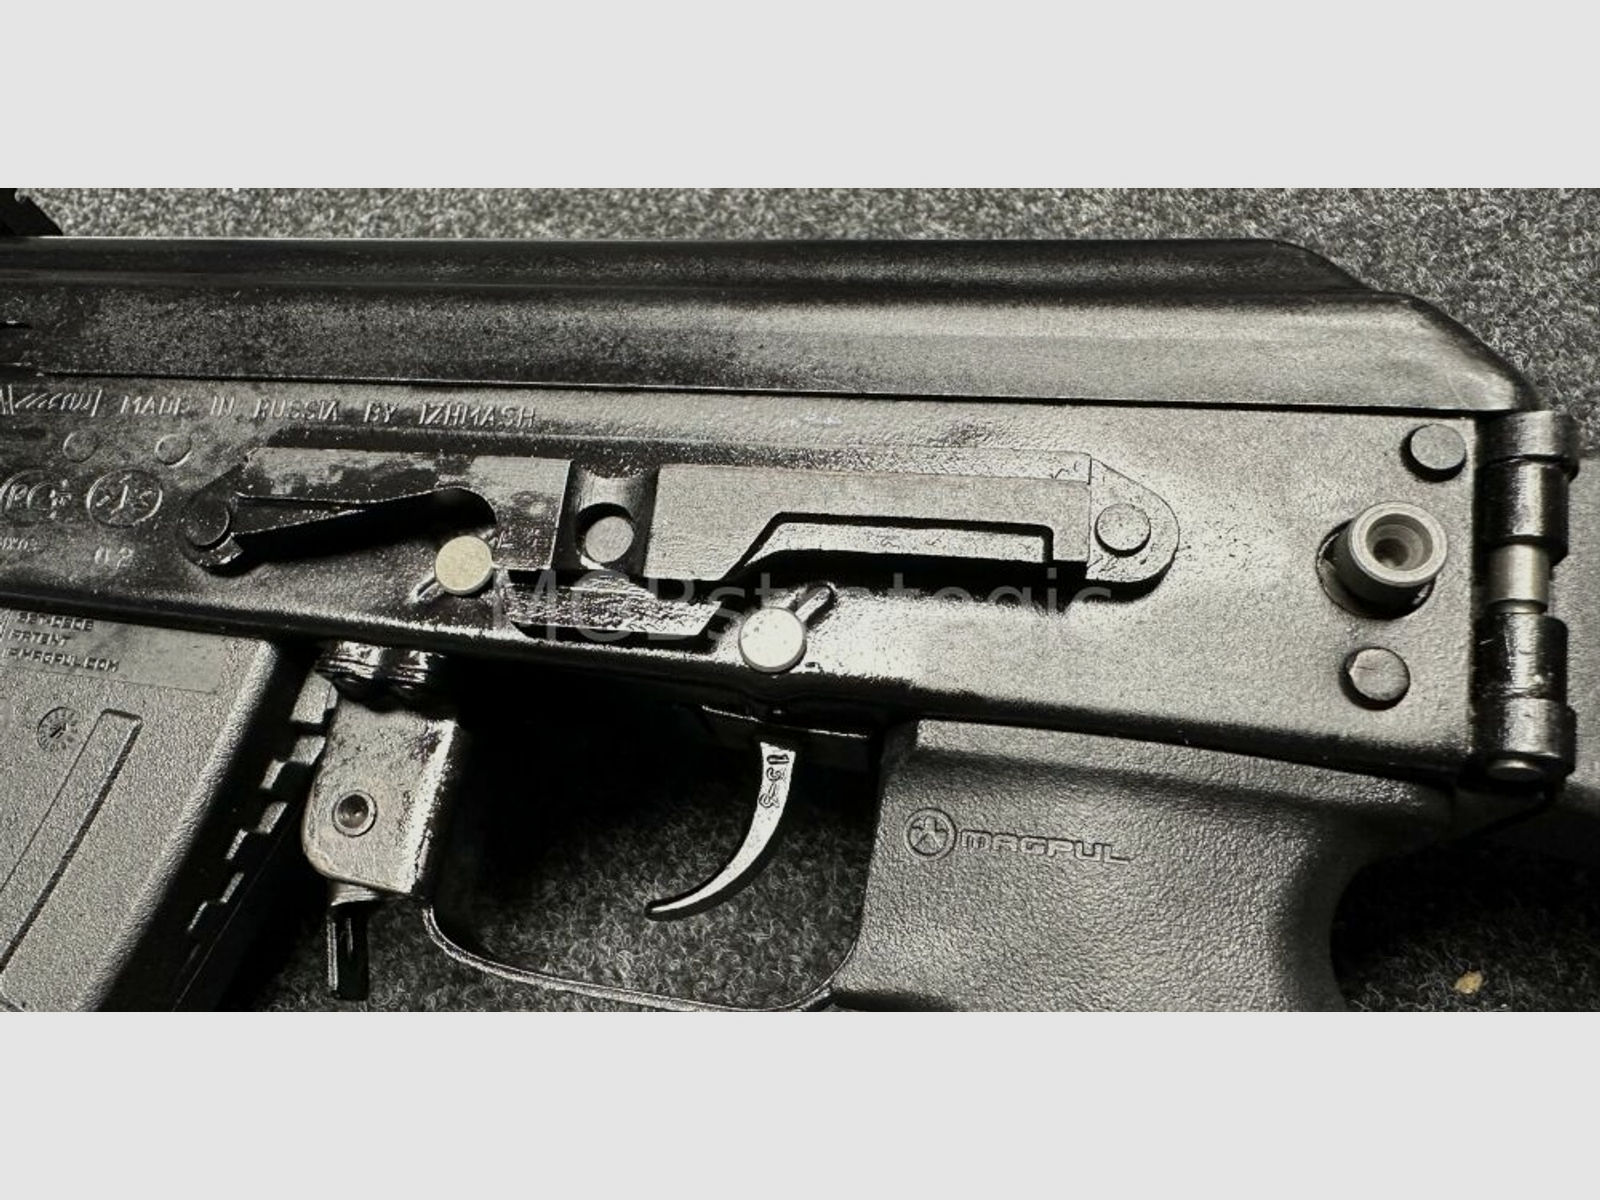 sportlich zugelassen! Izhmash Saiga MKK 104 halbautom. Büchse 7,62x39	 314mm Lauf - Klappschaft - zivile Version - System AK74 AK47 AK104 MKK104 - Cold Hammer Forged